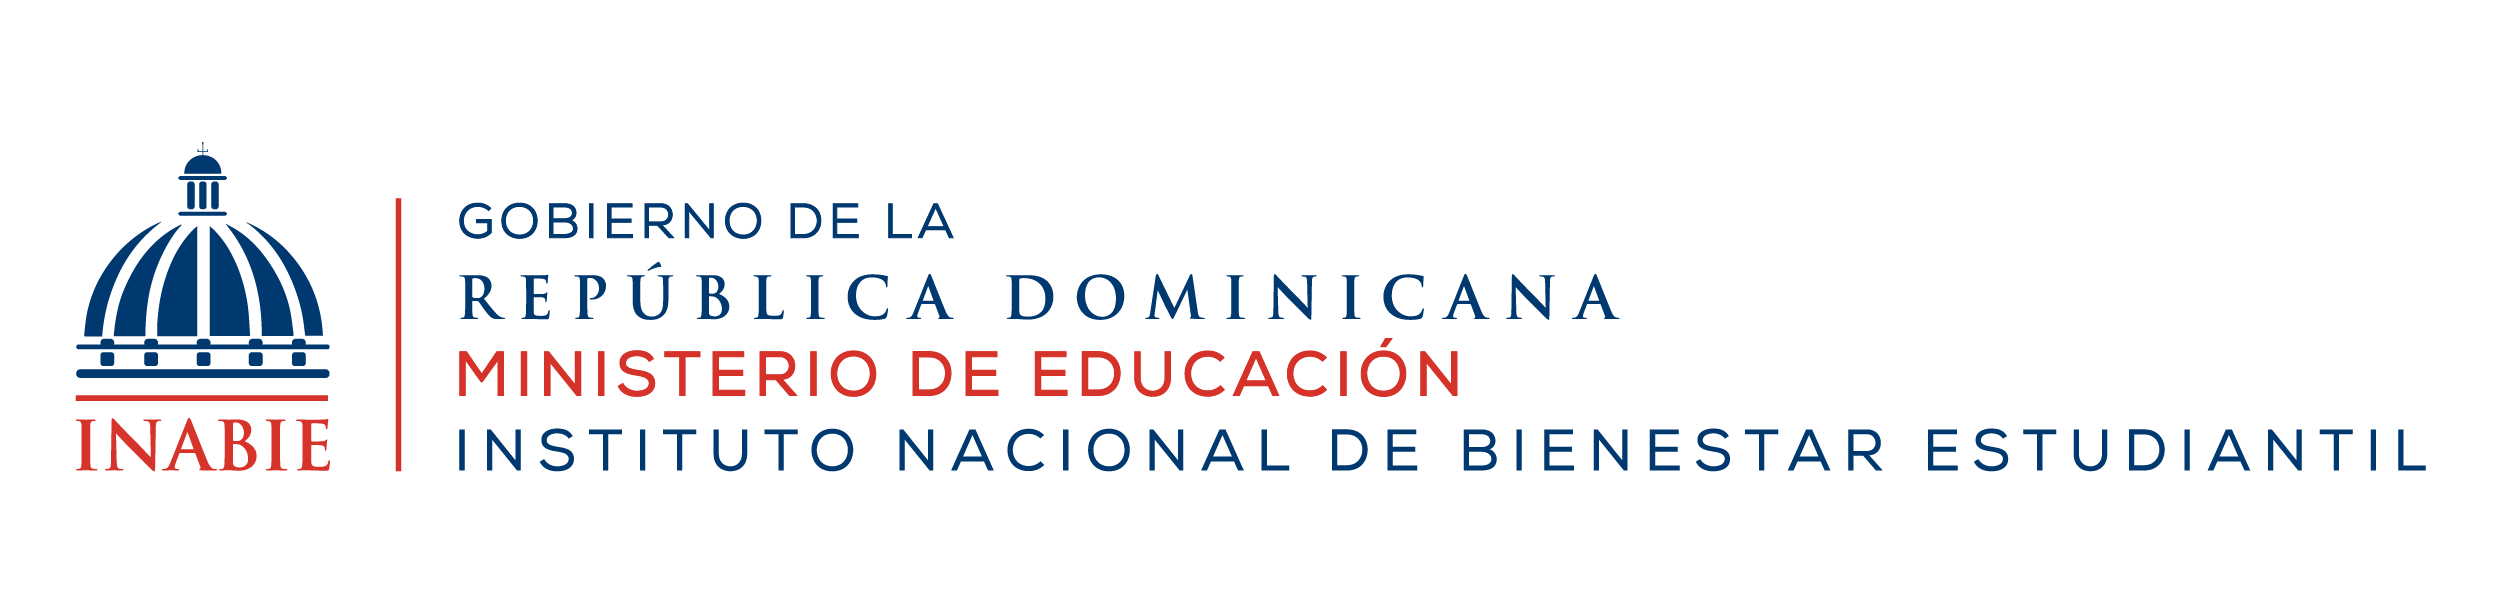 Instituto Nacional De Bienestar Estudiantil (INABIE)